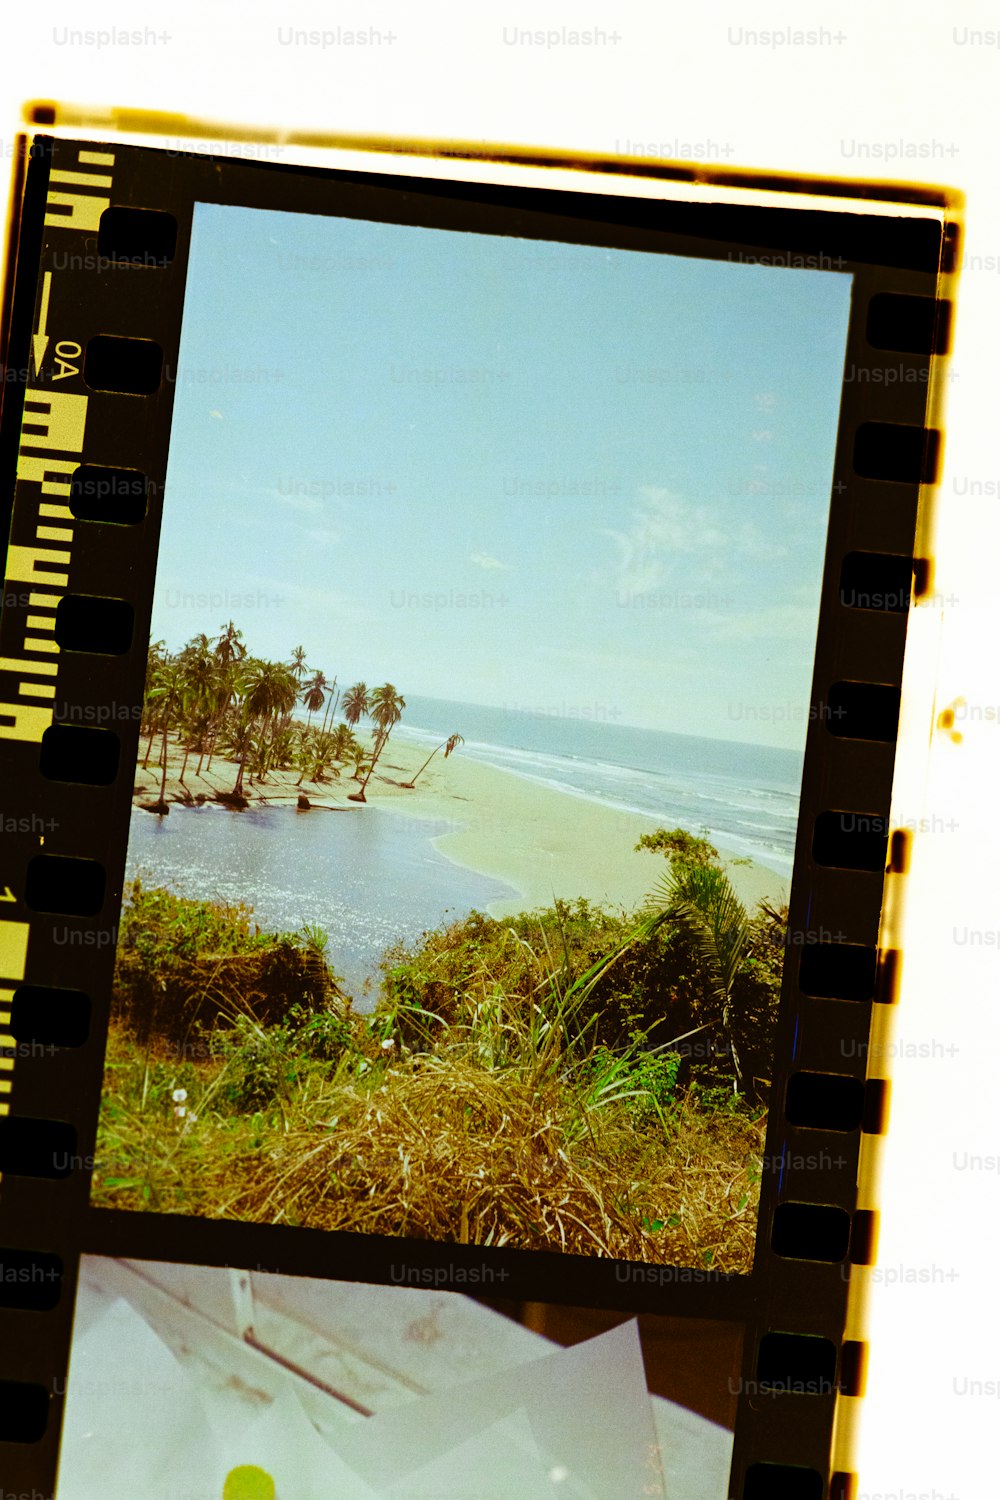 Ein Polaroid-Foto von einem Strand und Bäumen